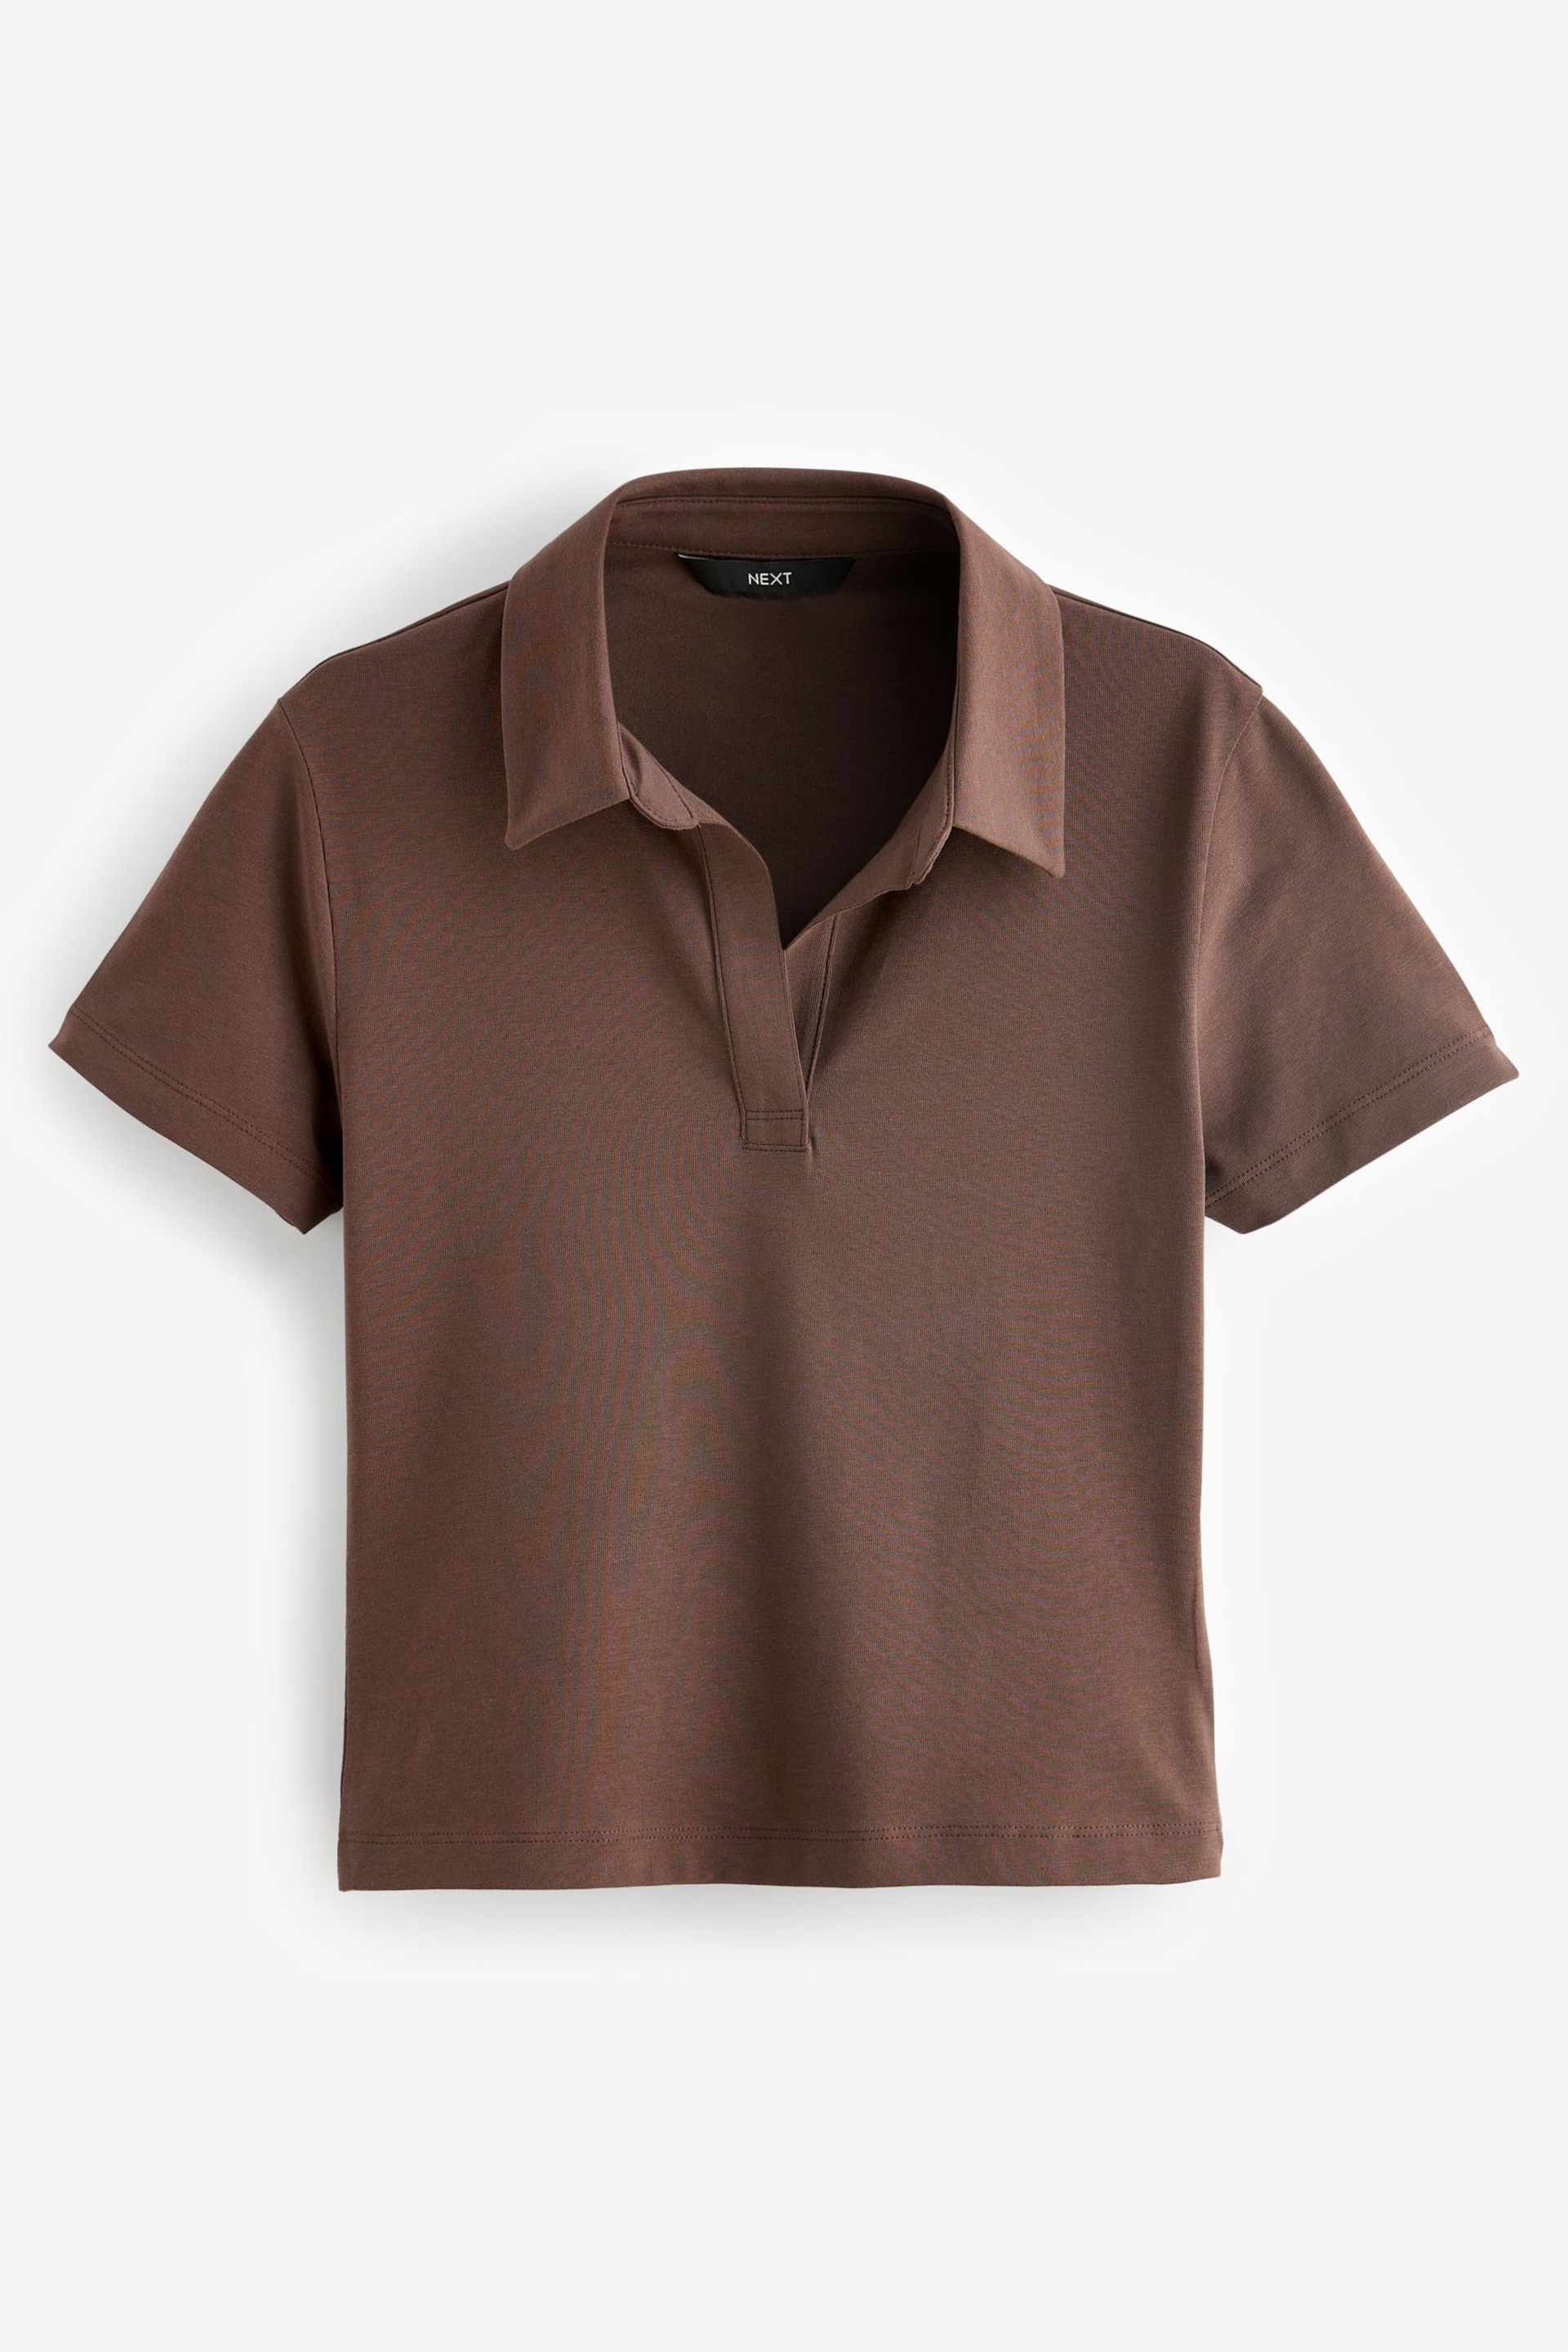 Chocolate Brown Polo Shirt - Image 6 of 7